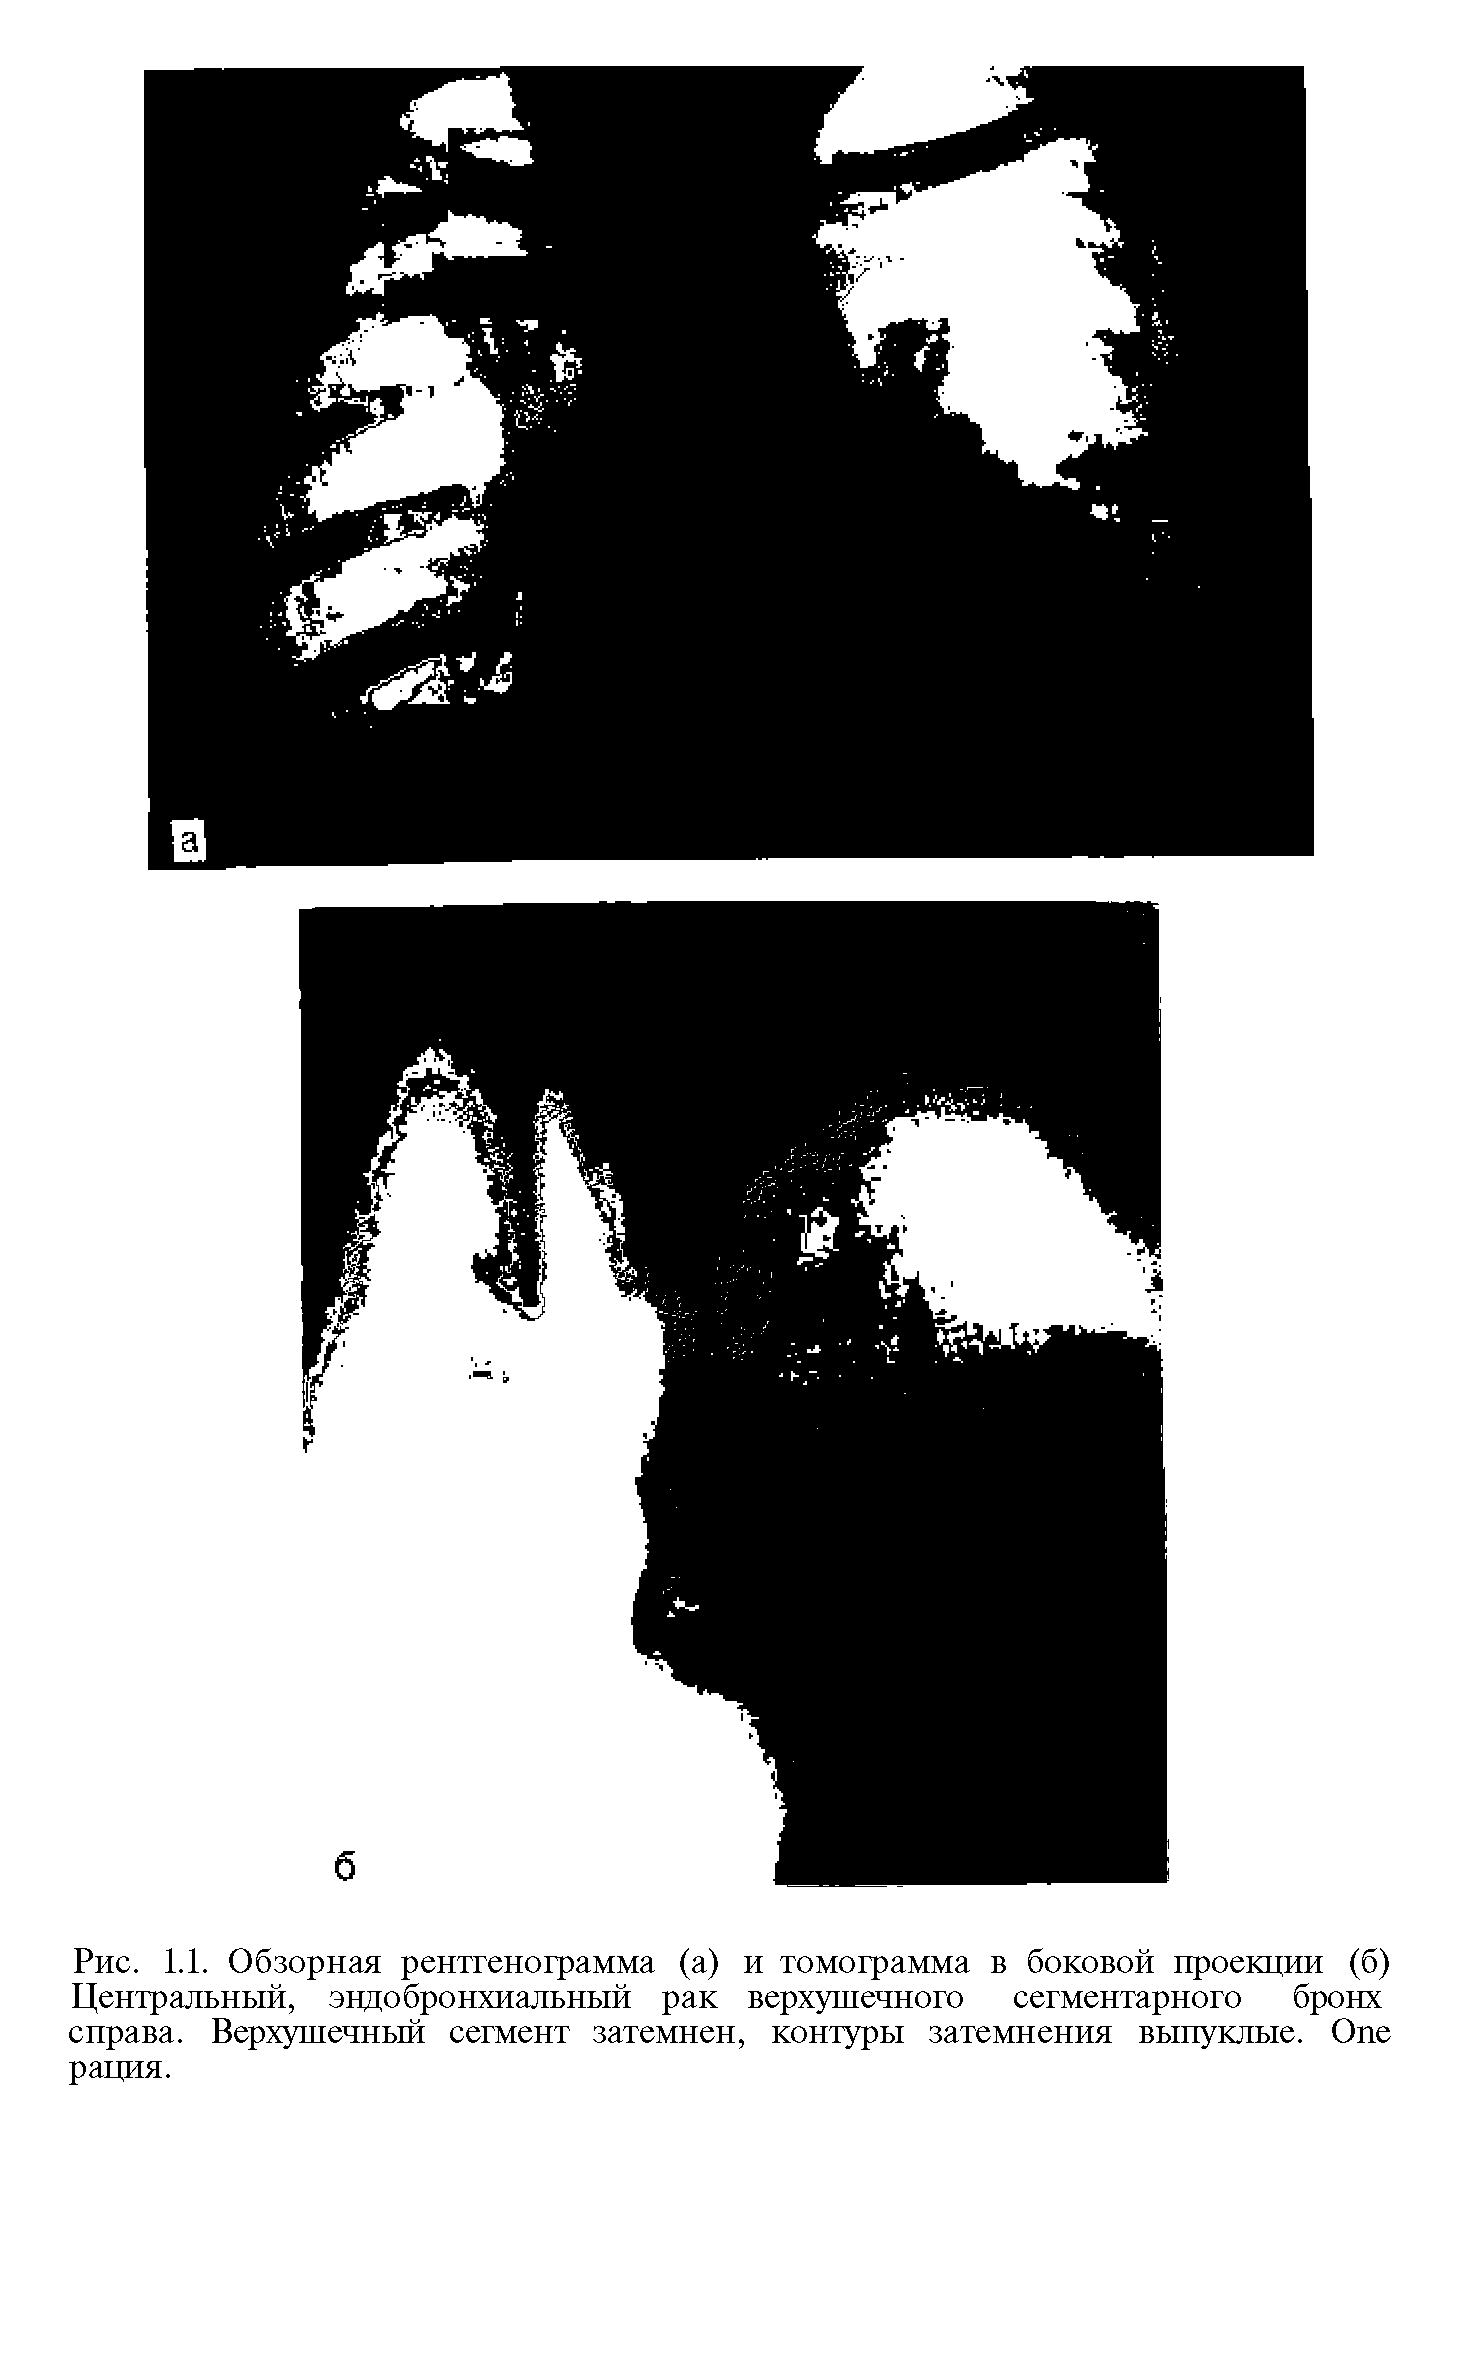 Рис. 1.1. Обзорная рентгенограмма (а) и томограмма в боковой проекции (б) Центральный, эндобронхиальный рак верхушечного сегментарного бронх справа. Верхушечный сегмент затемнен, контуры затемнения выпуклые. O рация.